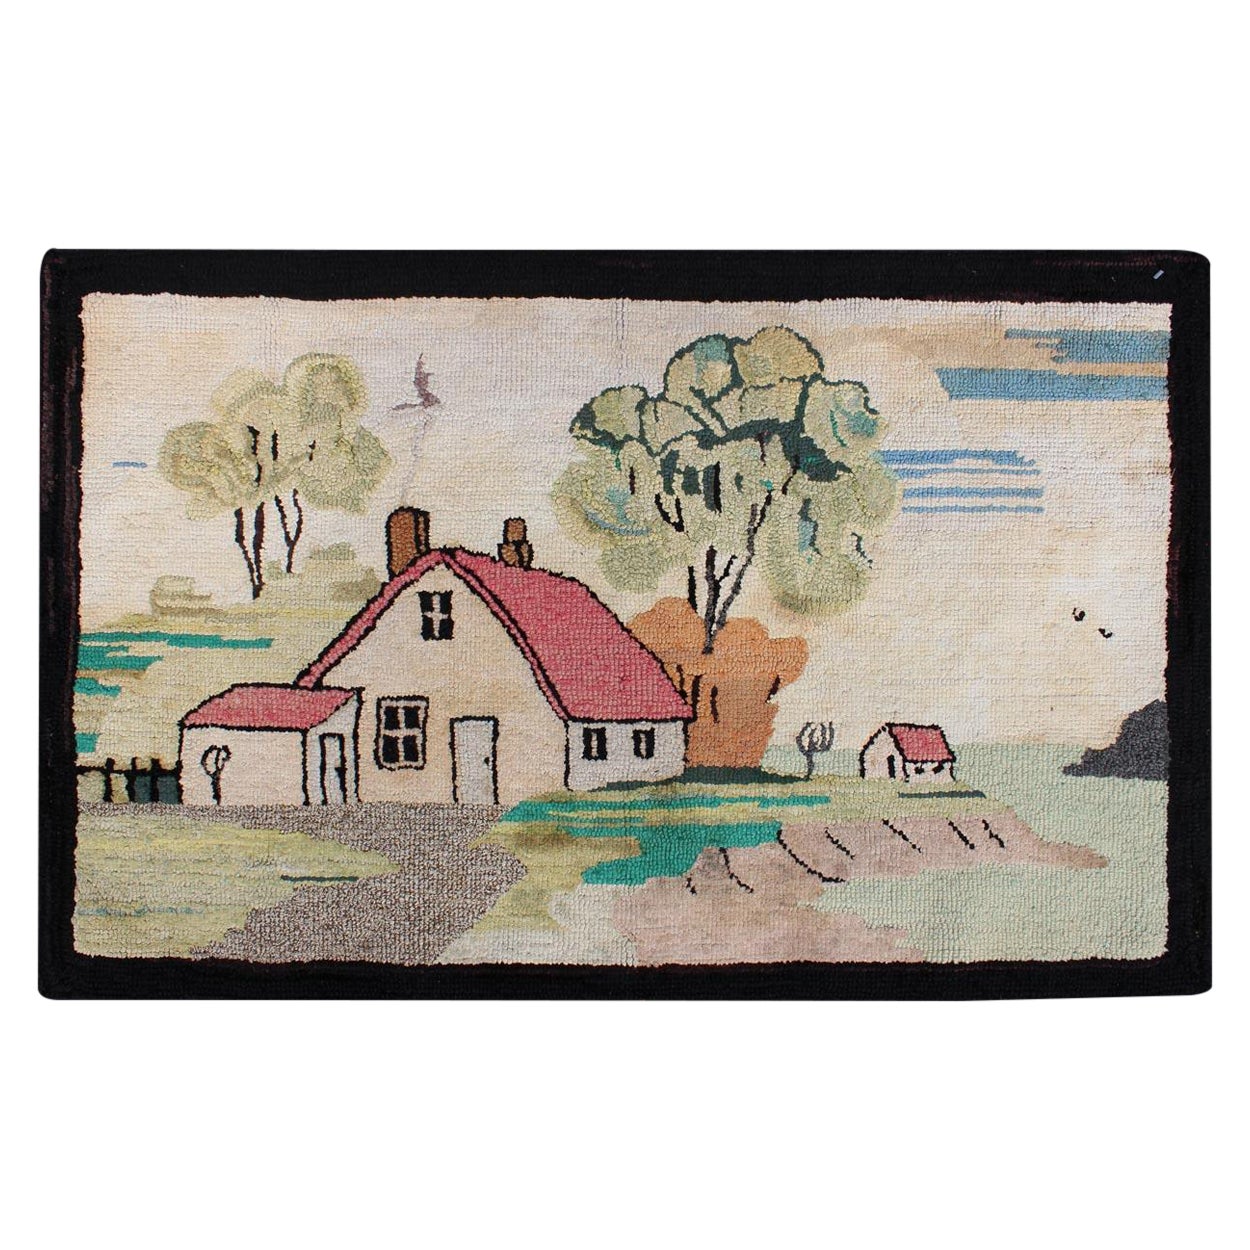 Antiker amerikanischer Kapuzenteppich mit altem Bauernhaus-Stil, Bild